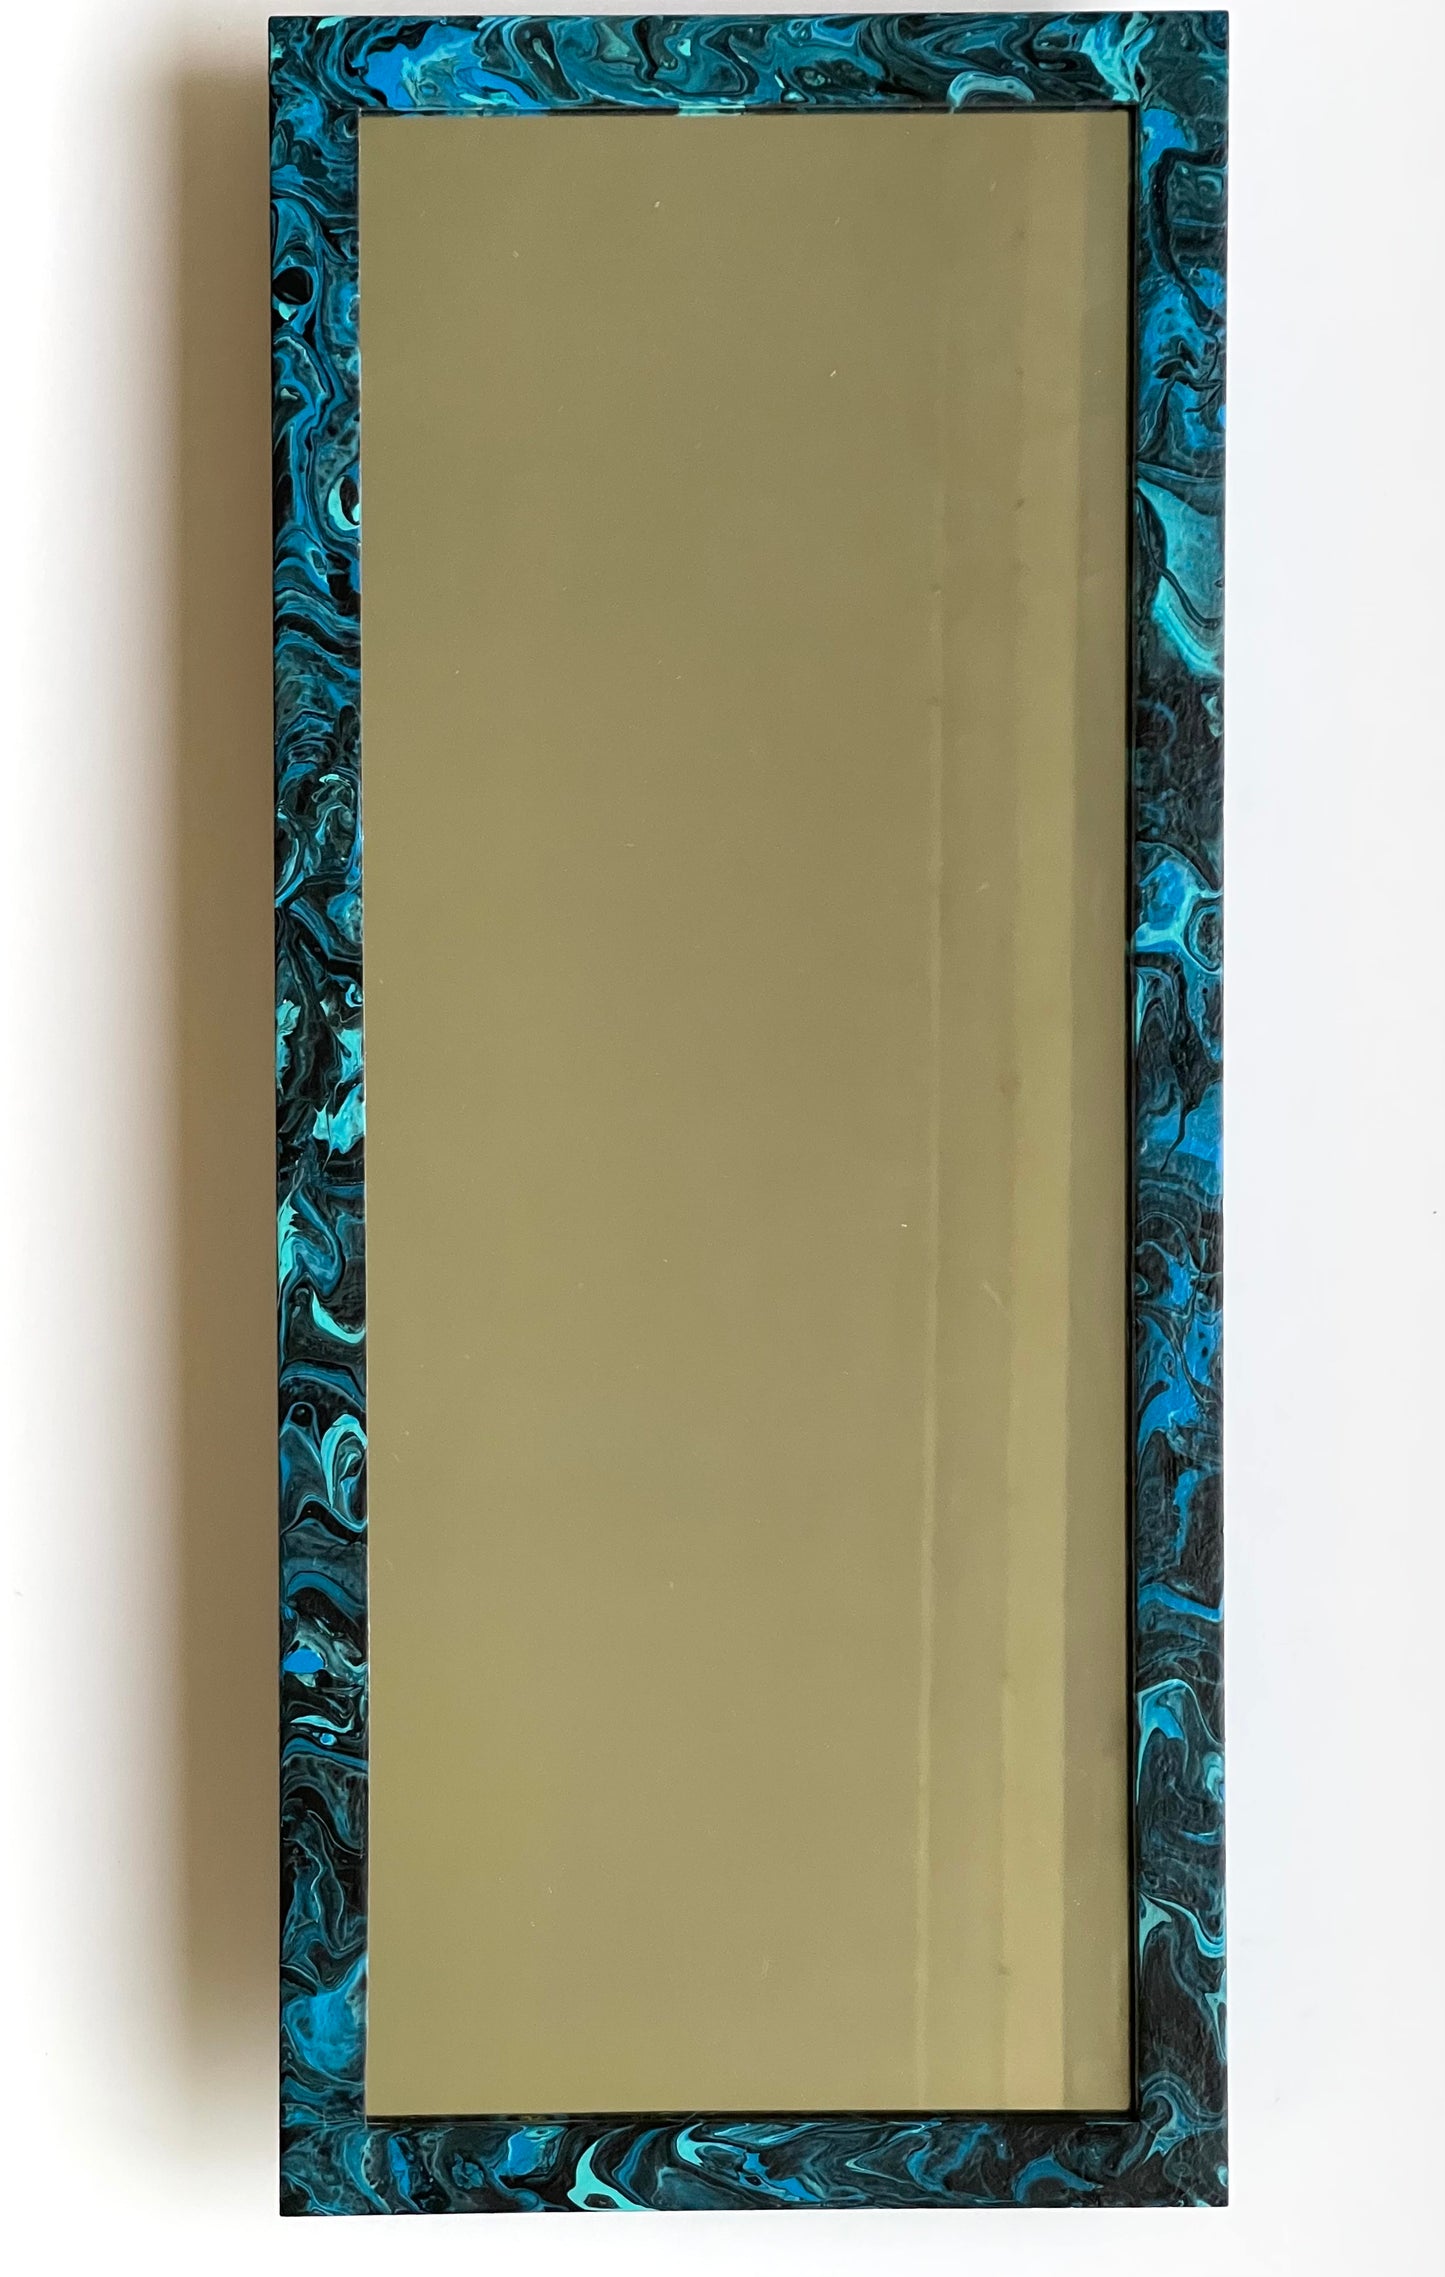 Blue Fluid Art Framed Mirror